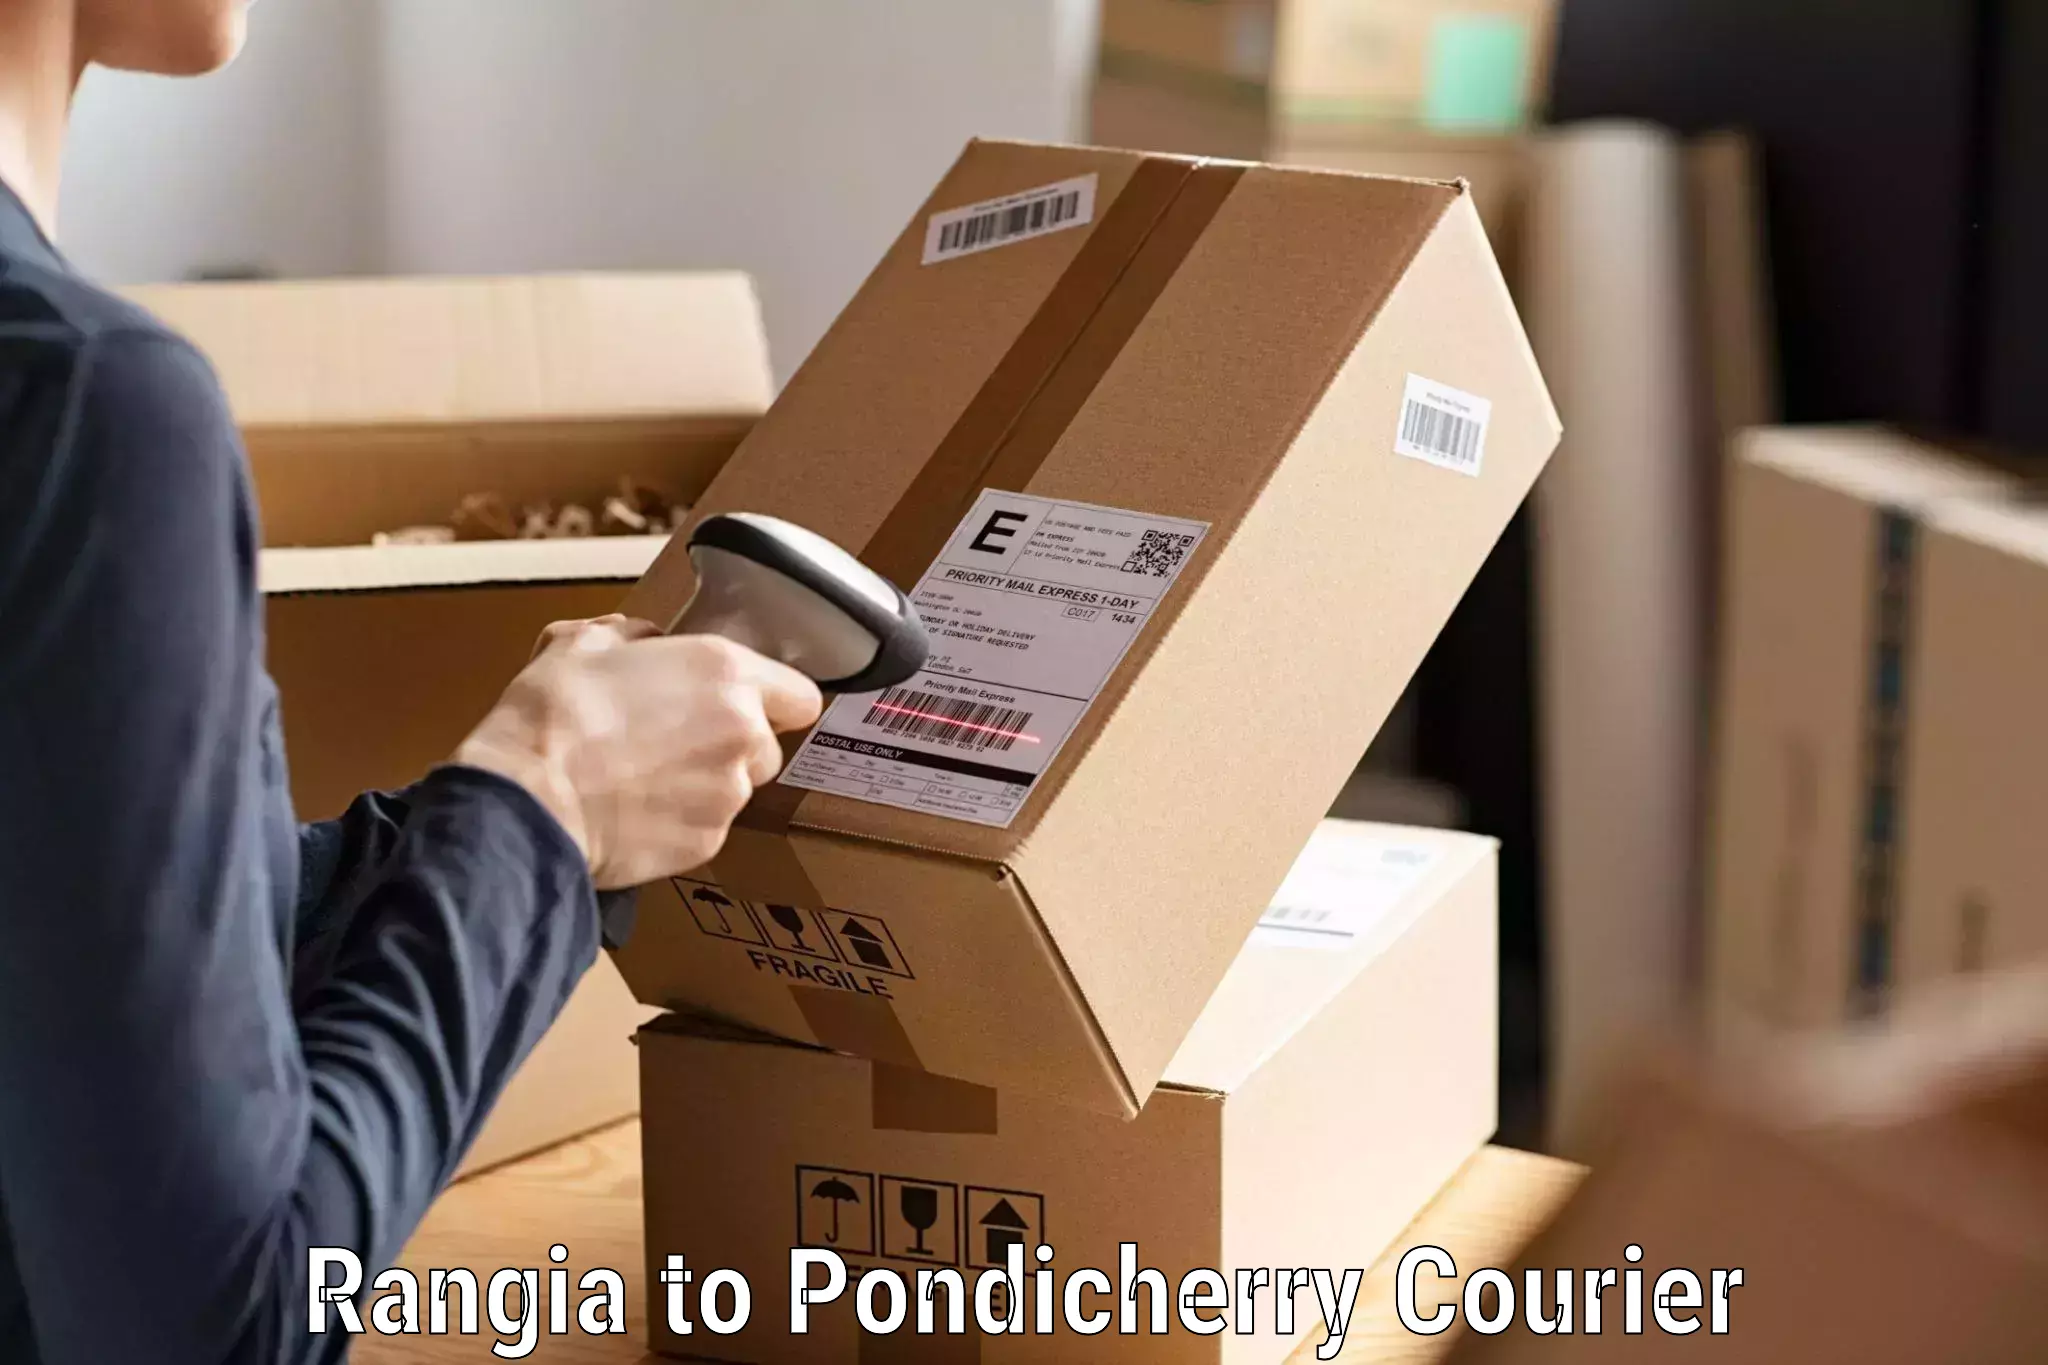 Customer-focused courier Rangia to Karaikal